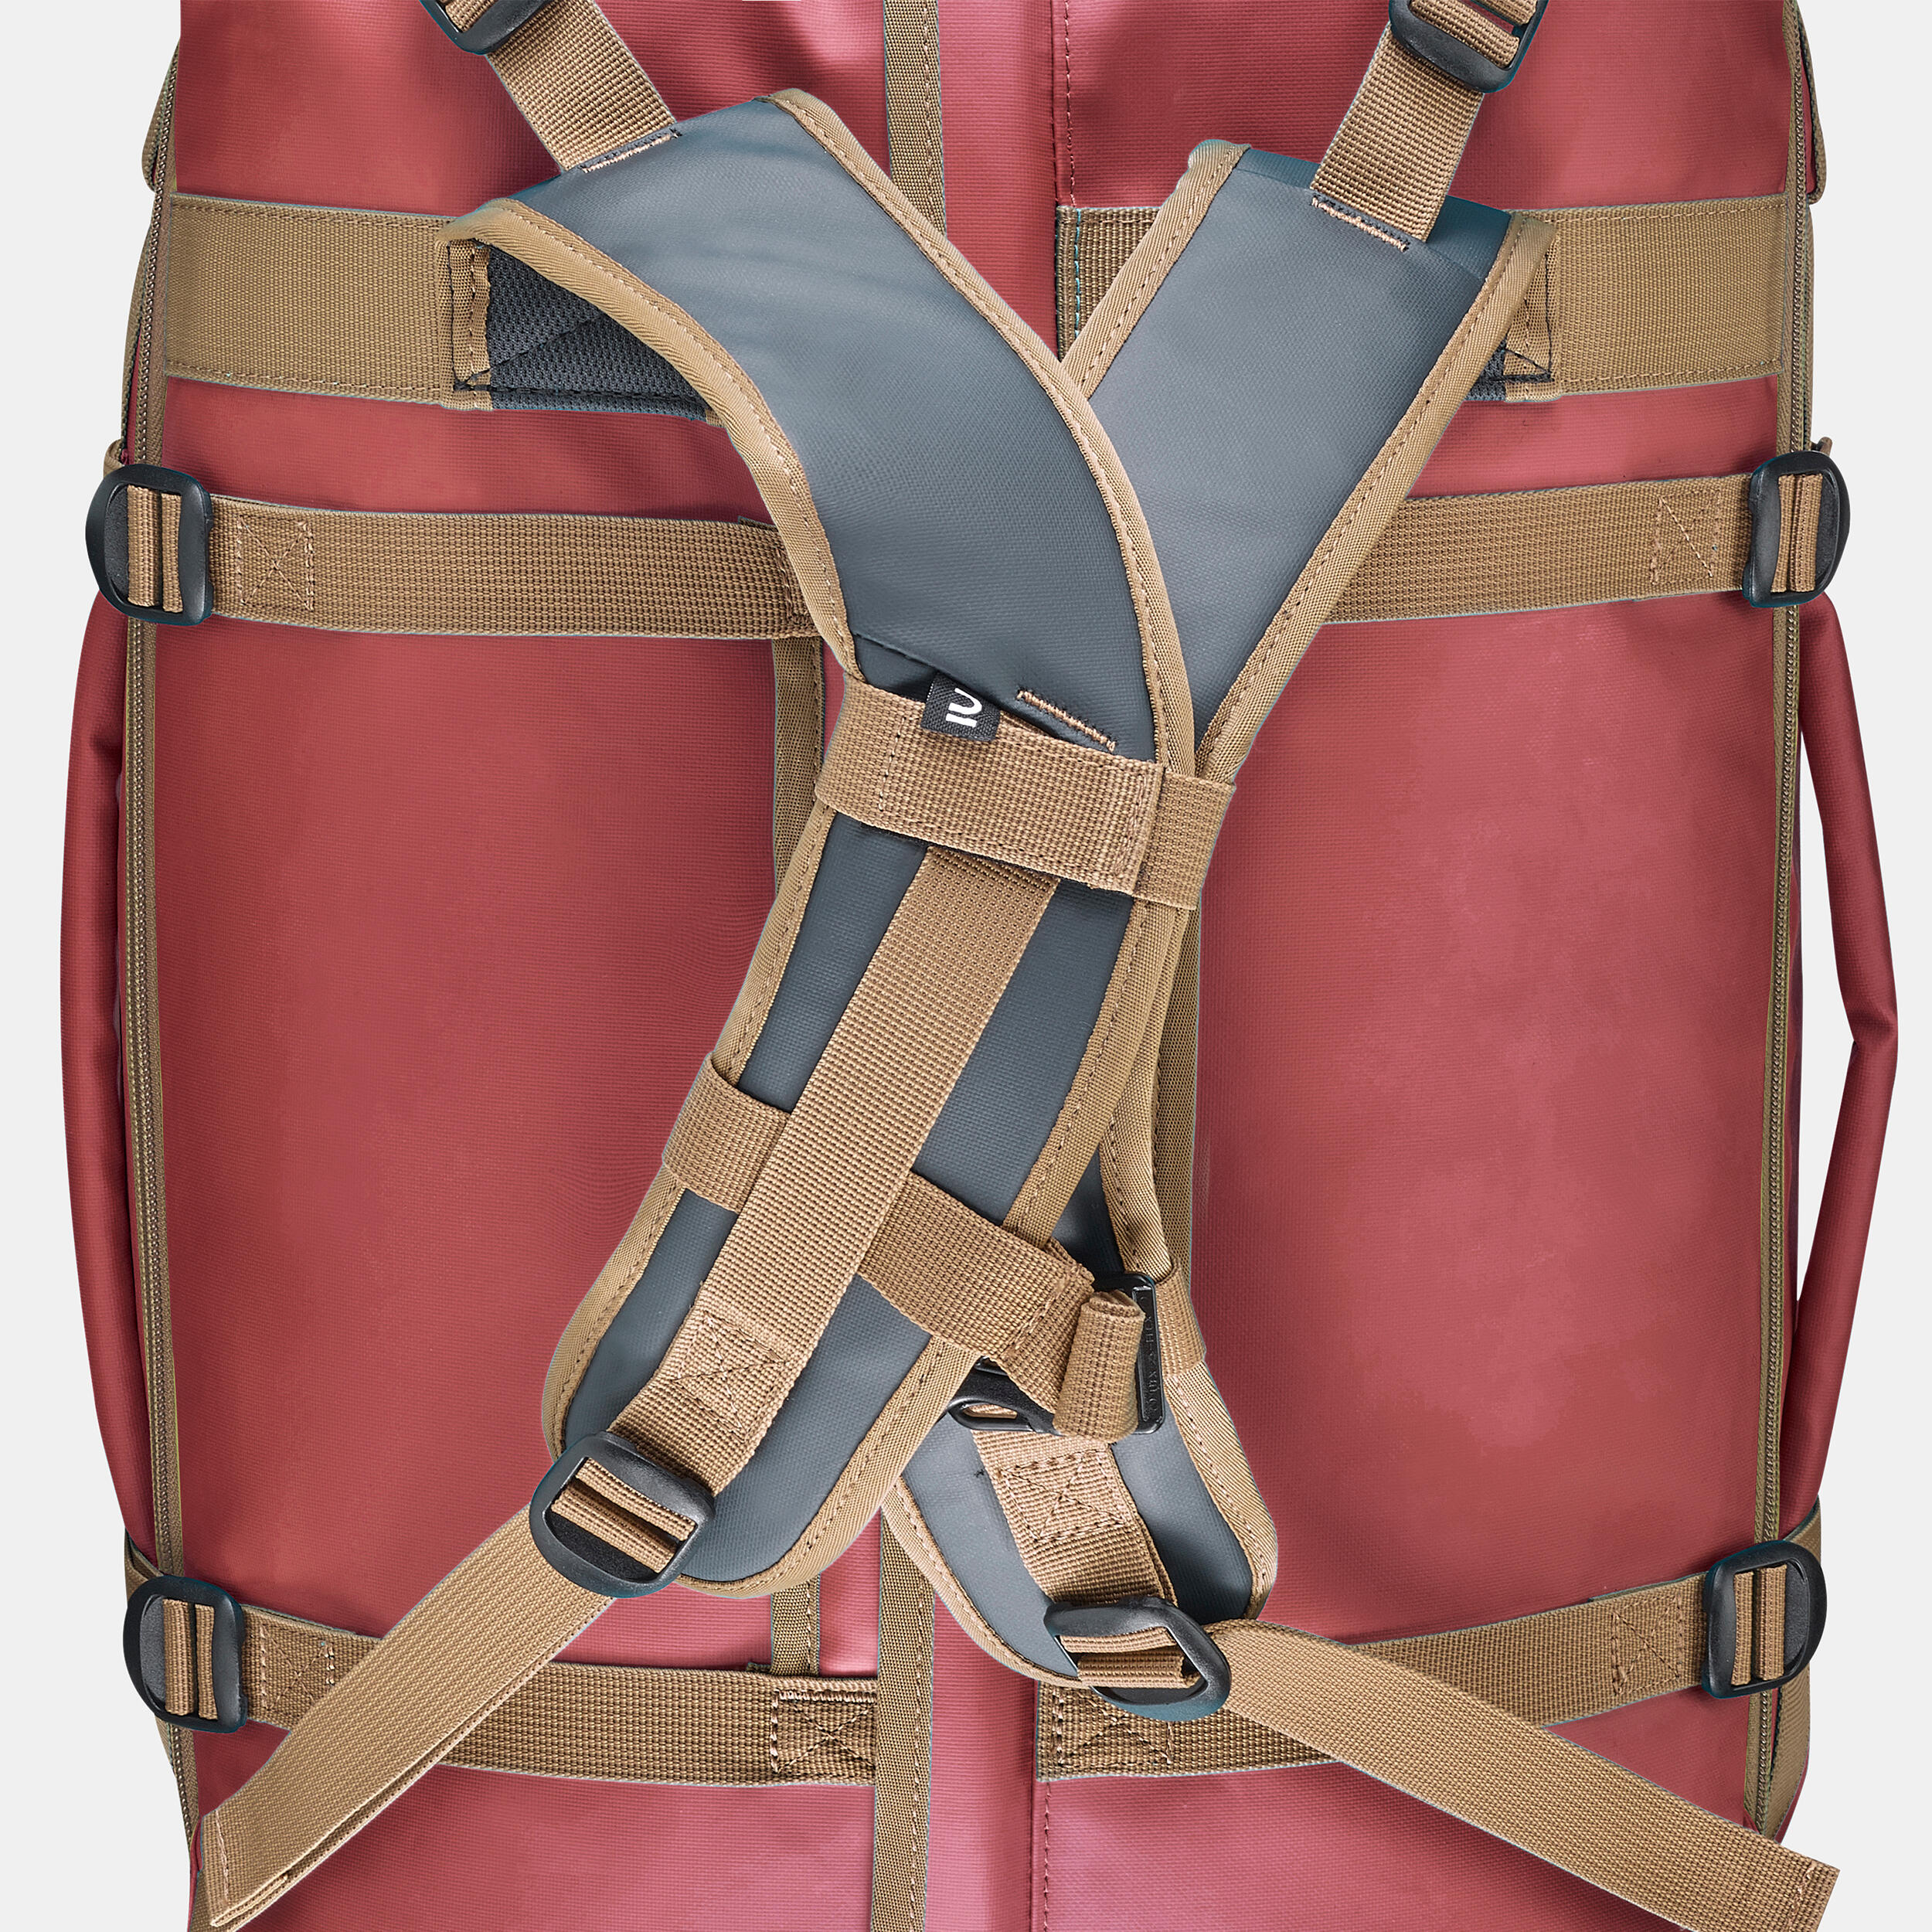 Trekking Carry Bag - 40 L to 60 L - DUFFEL 500 EXTEND 9/9